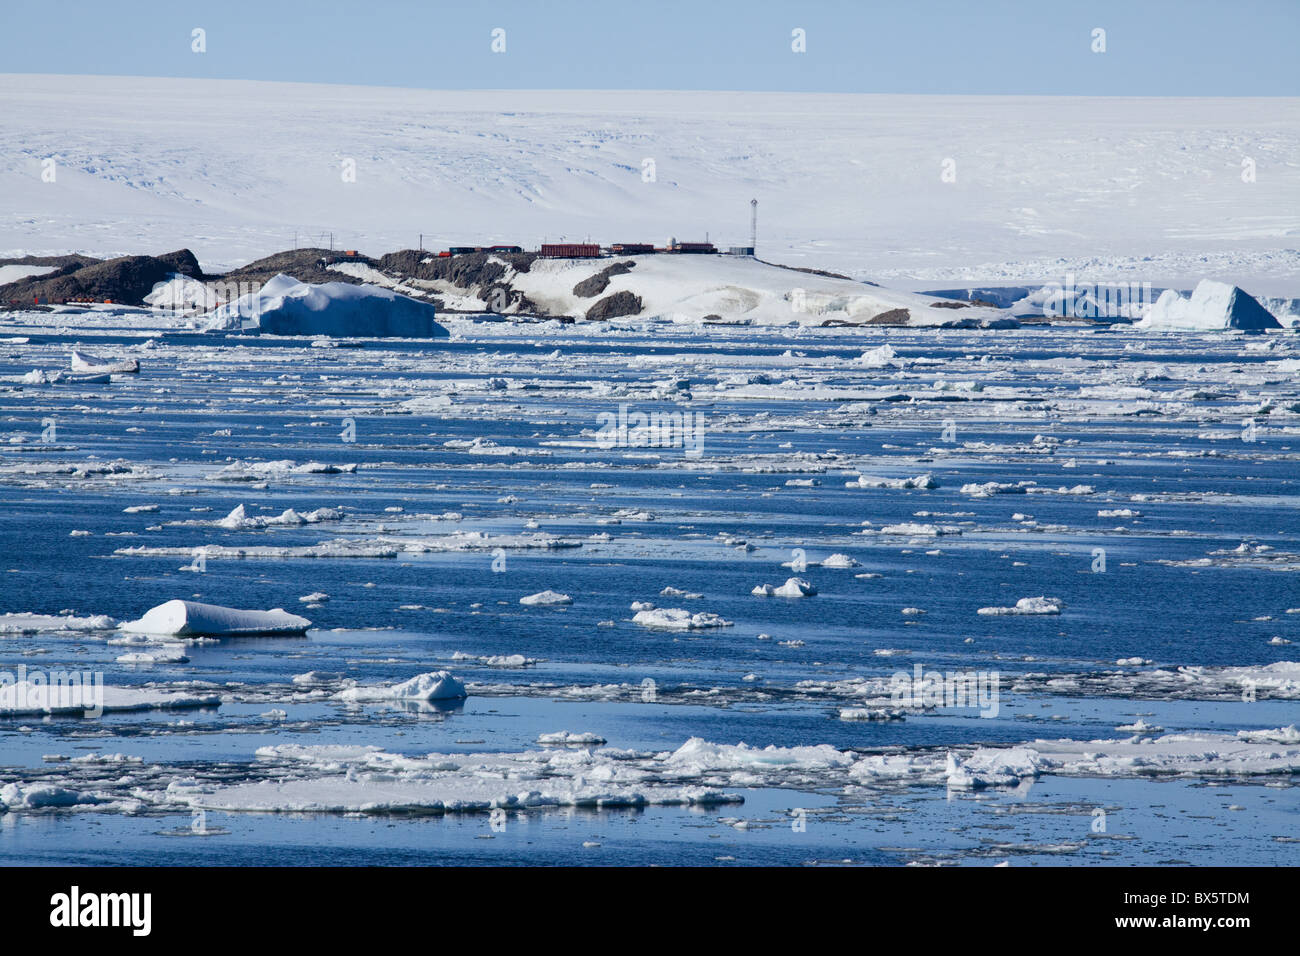 Station de recherche, Dumont d'Urville, l'Ile des pétrels, Antarctique, les régions polaires Banque D'Images